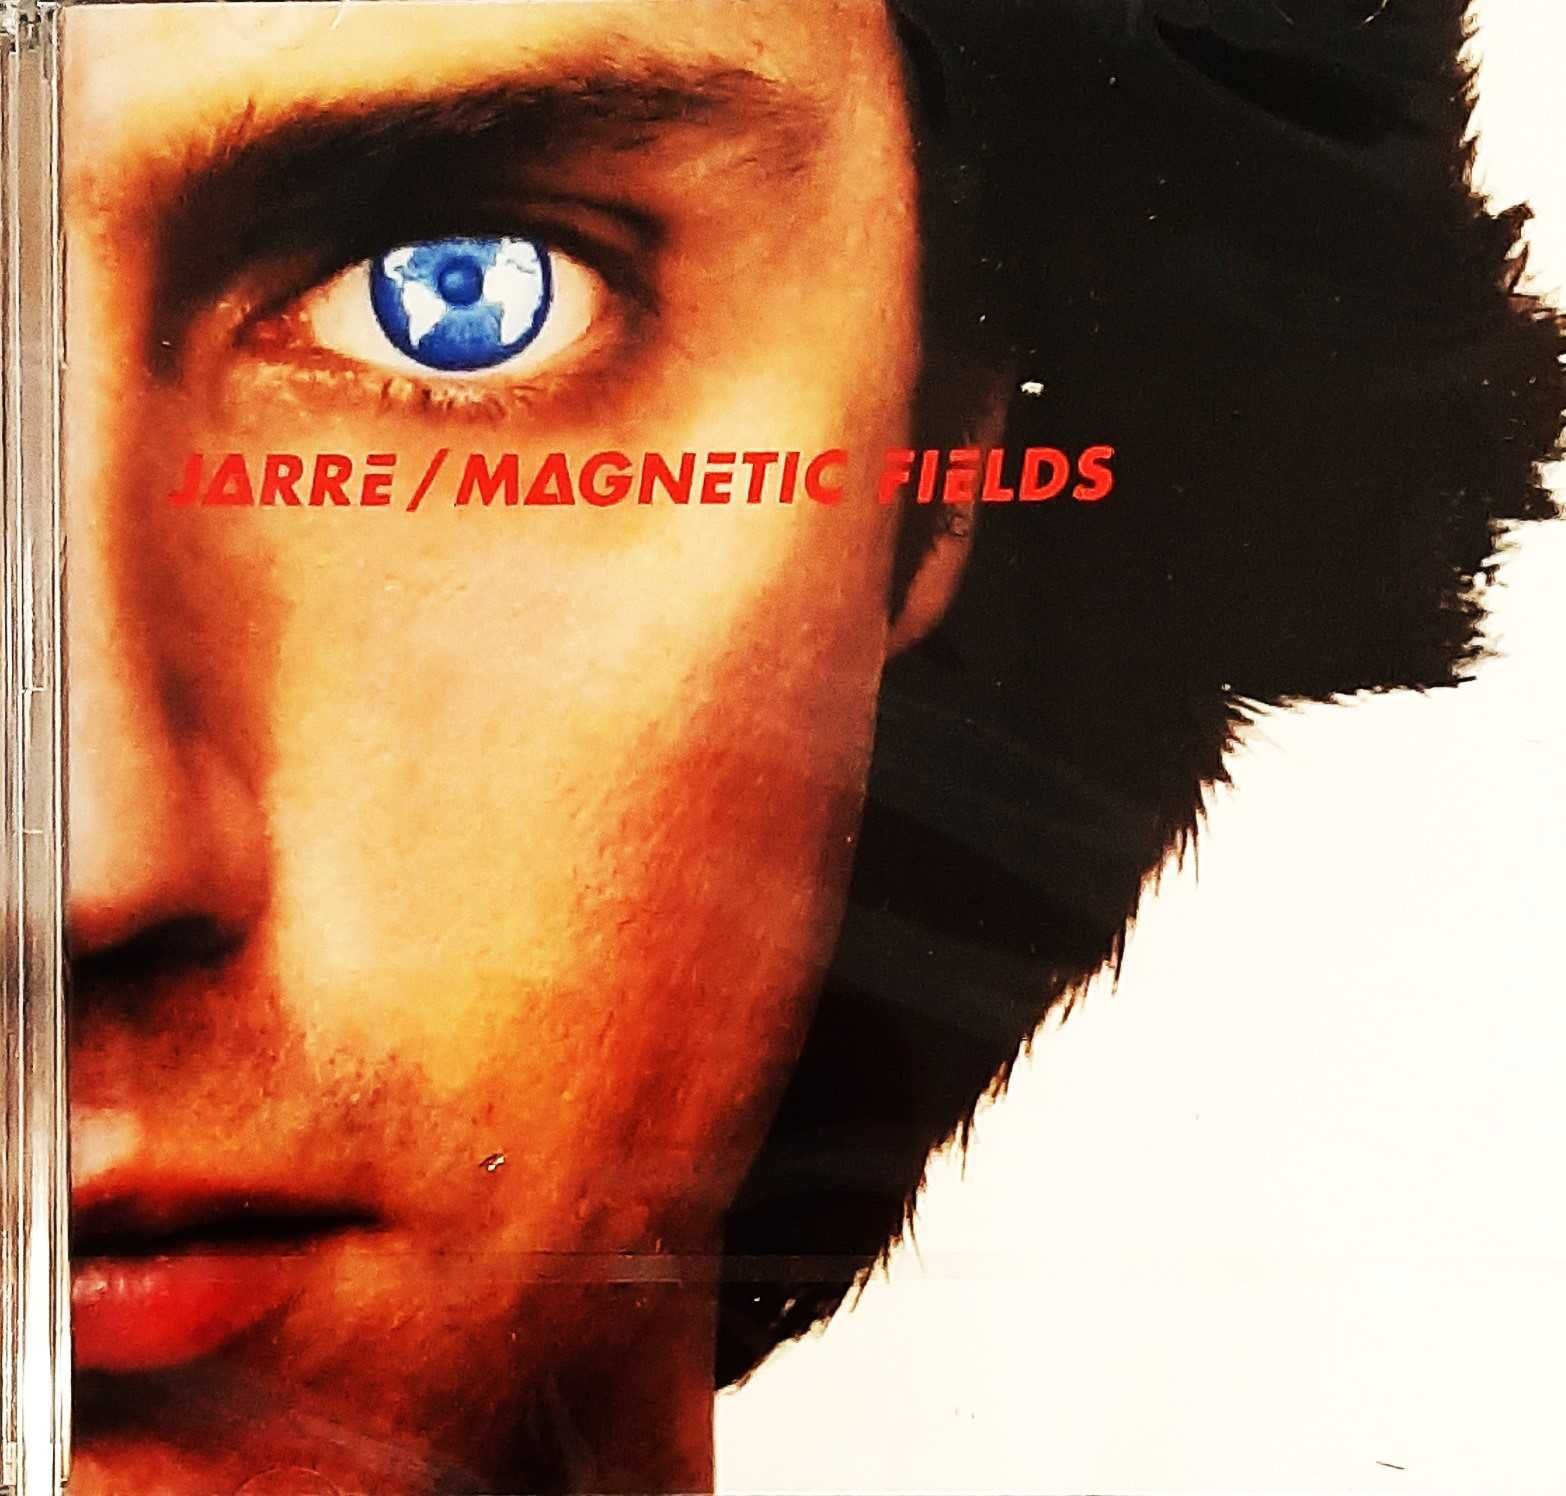 Wspaniały Album CD Jean-Michel Jarre Magnetic Fields CD